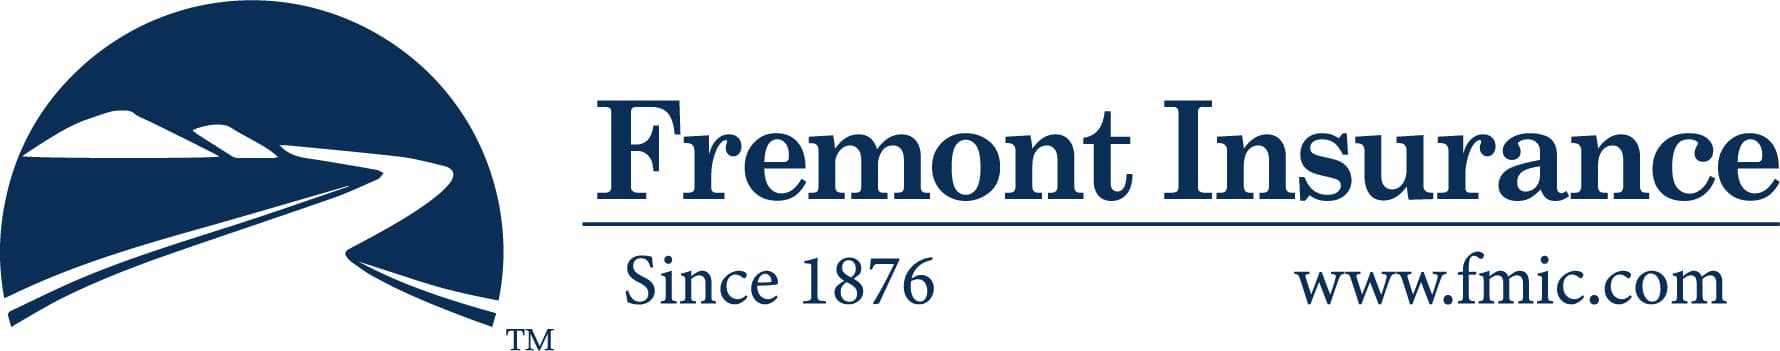 fremont-insurance-full-logo